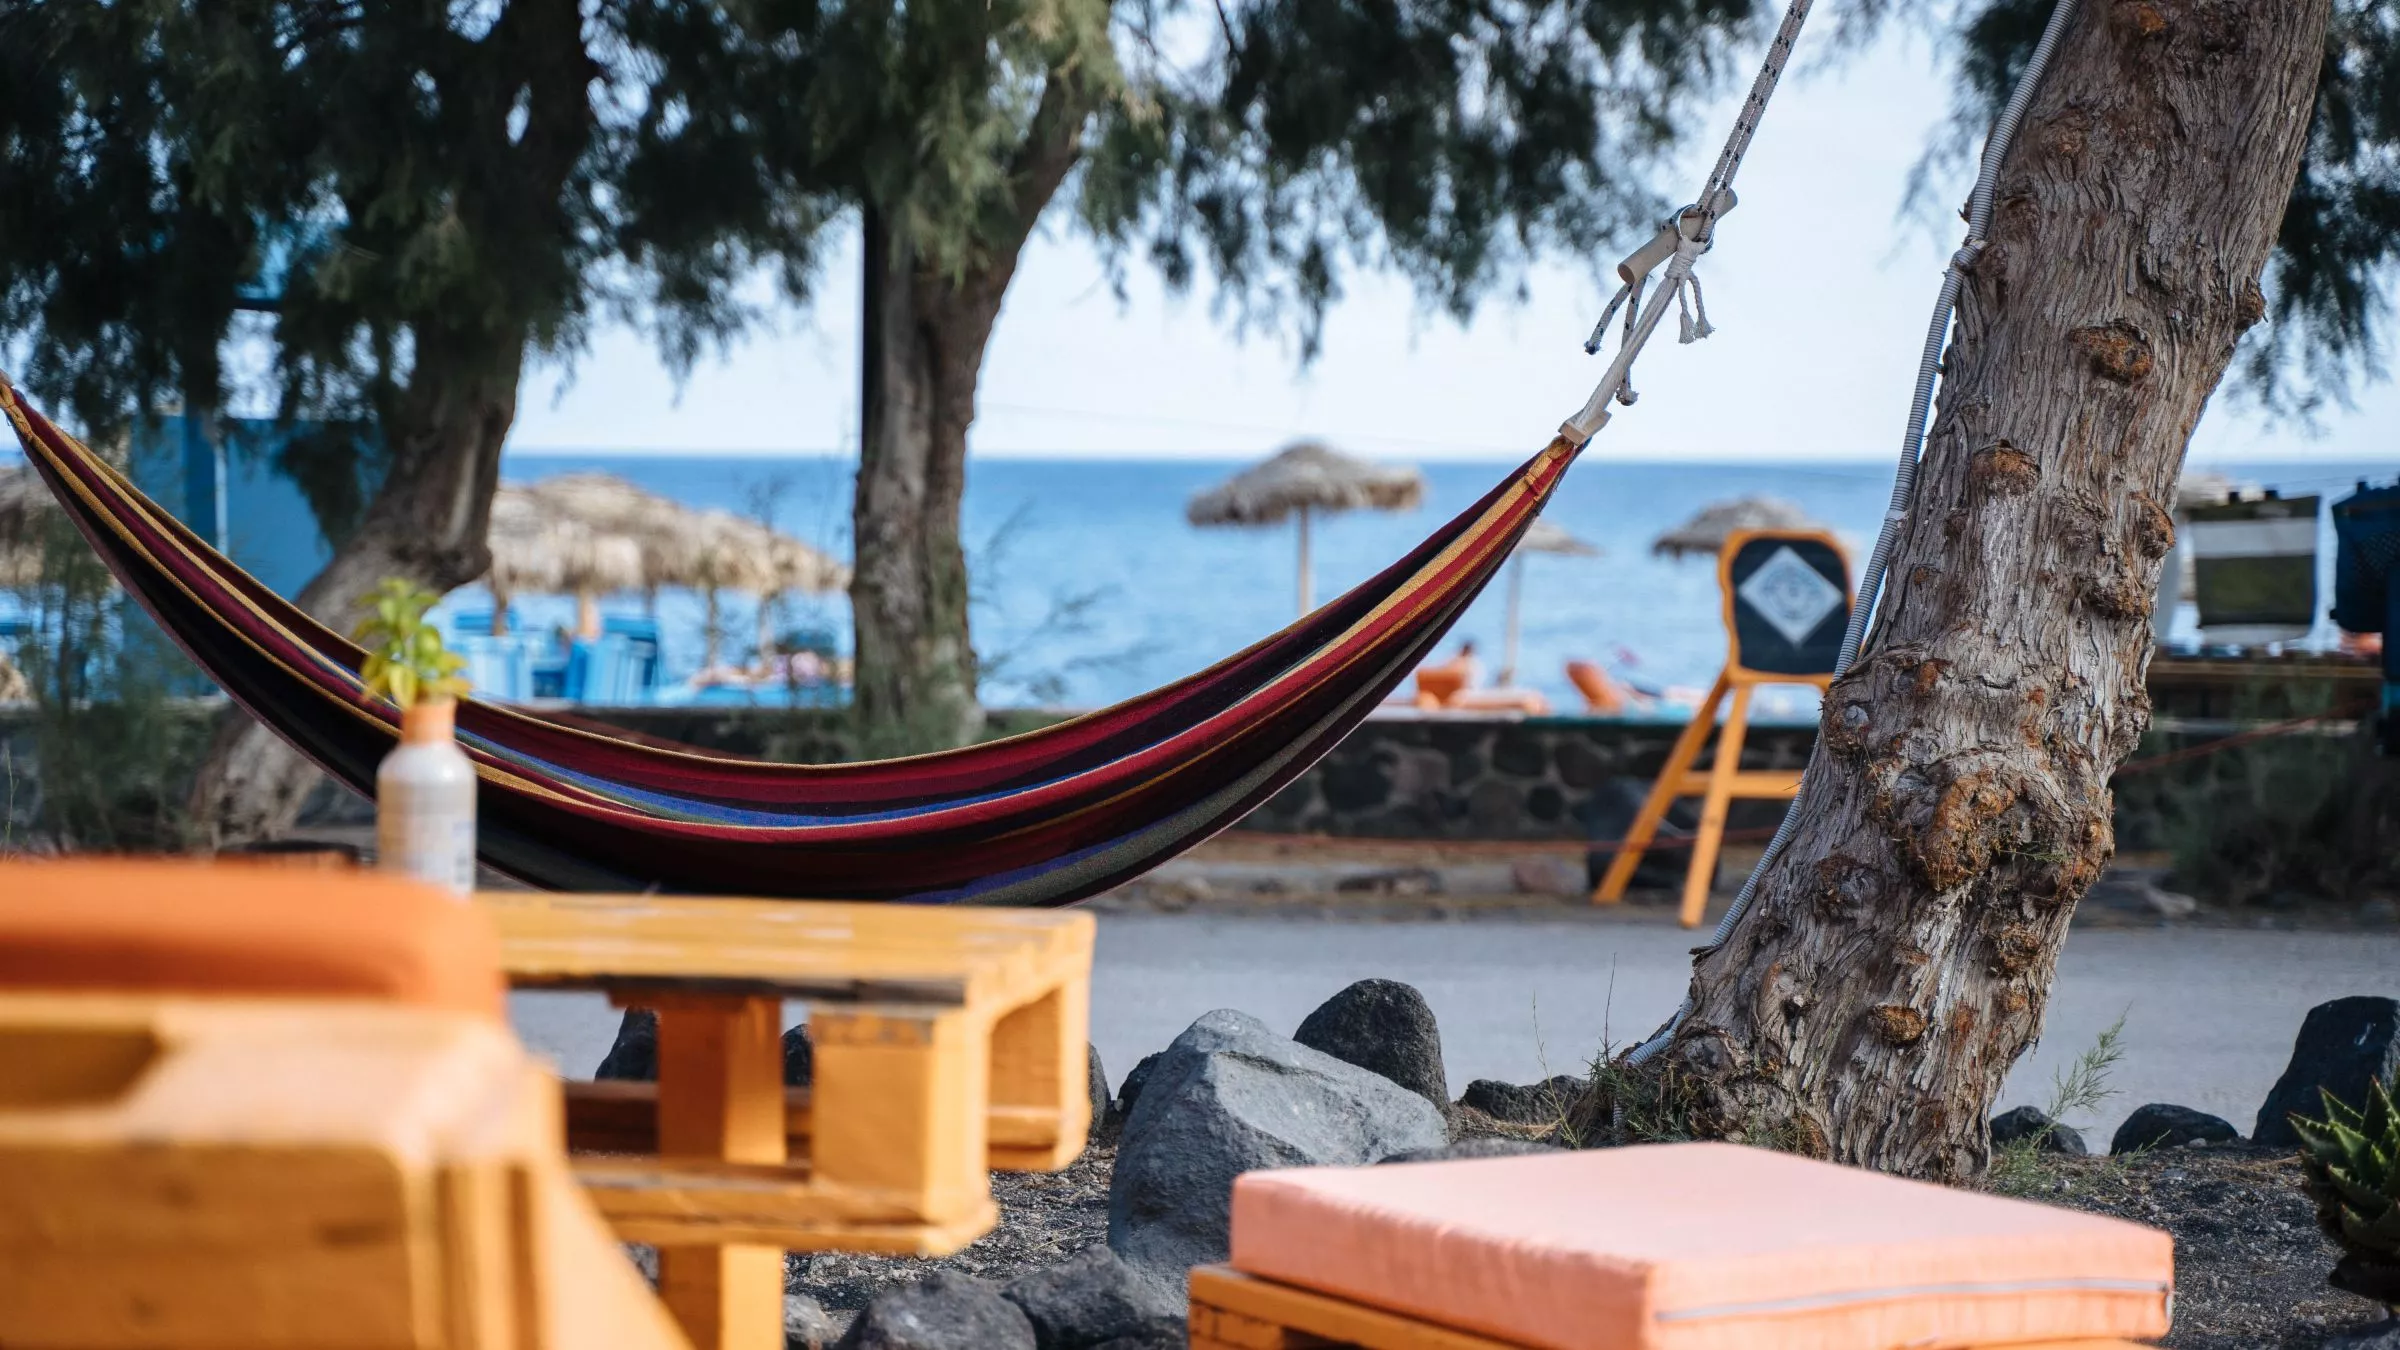 Ausreichend Platz zum Relaxen – am Perissa Beach in Emporio reiht sich ein Café an das nächste